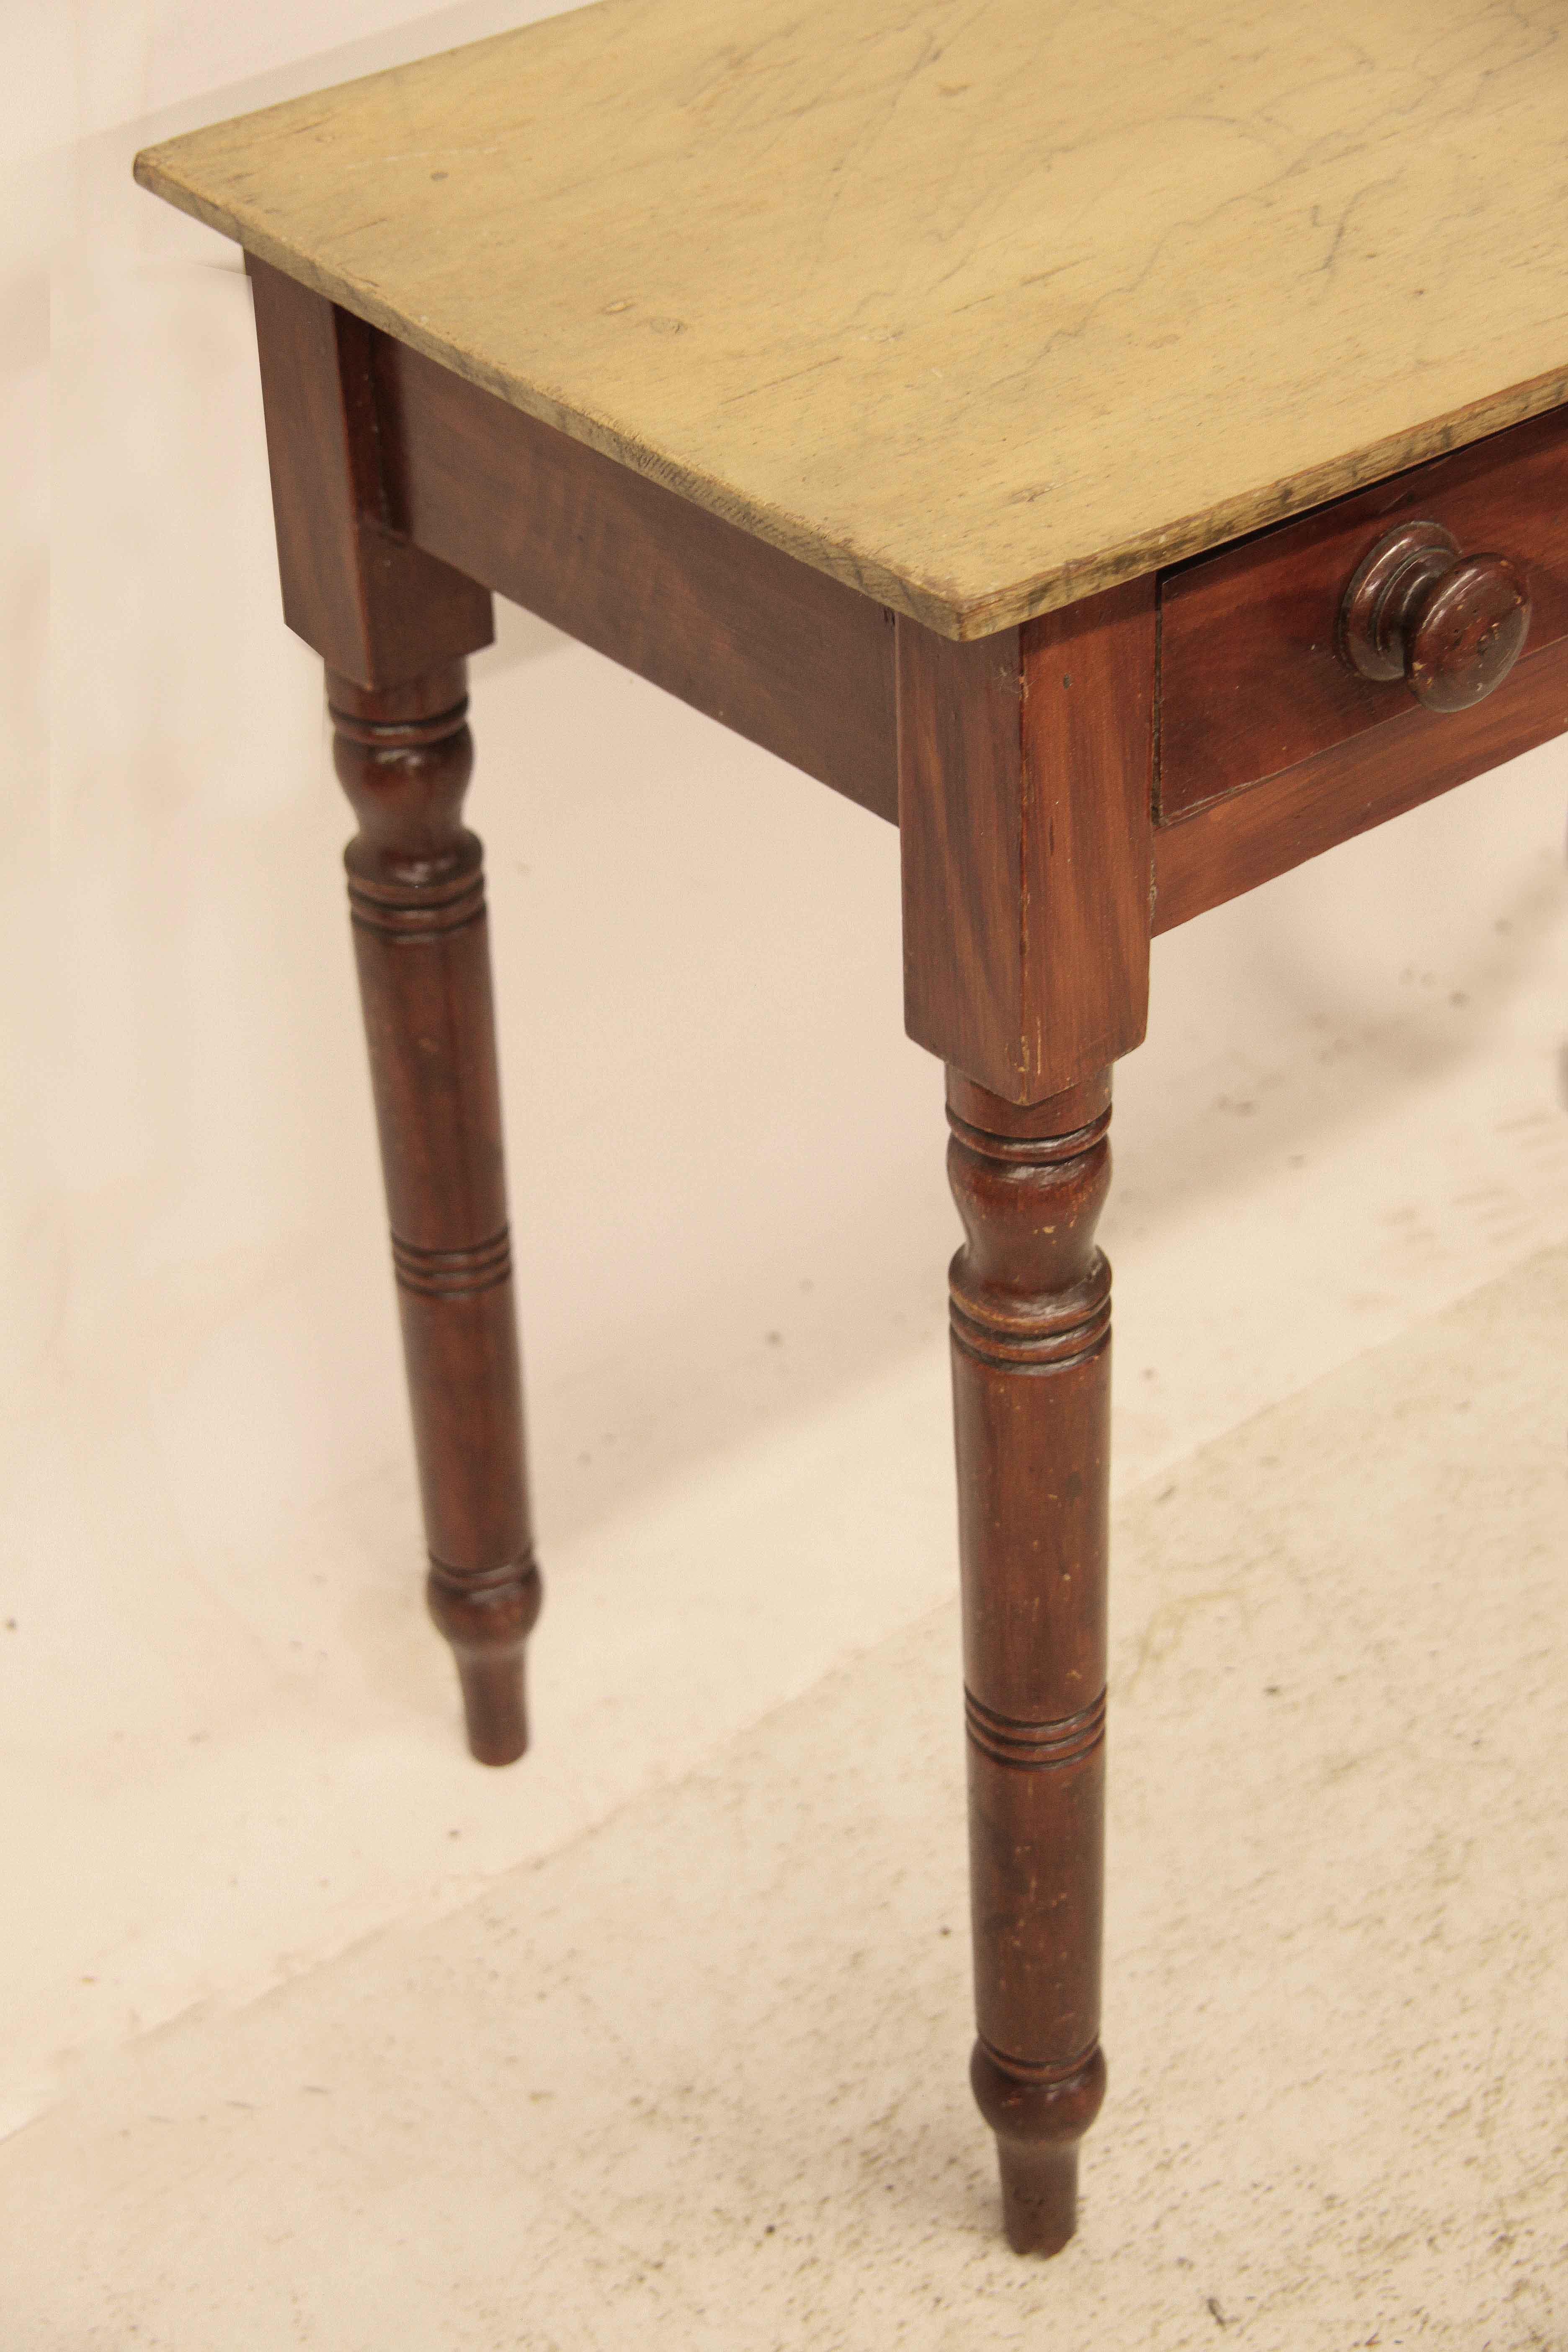 Englische Maserung lackiert eine Schublade Tisch, der Bogen vorne oben ist gemalt, um Marmor zu simulieren,  Maserung lackiert Schublade behält die ursprünglichen Knöpfe,  Die Beine sind gedreht und gut proportioniert.  